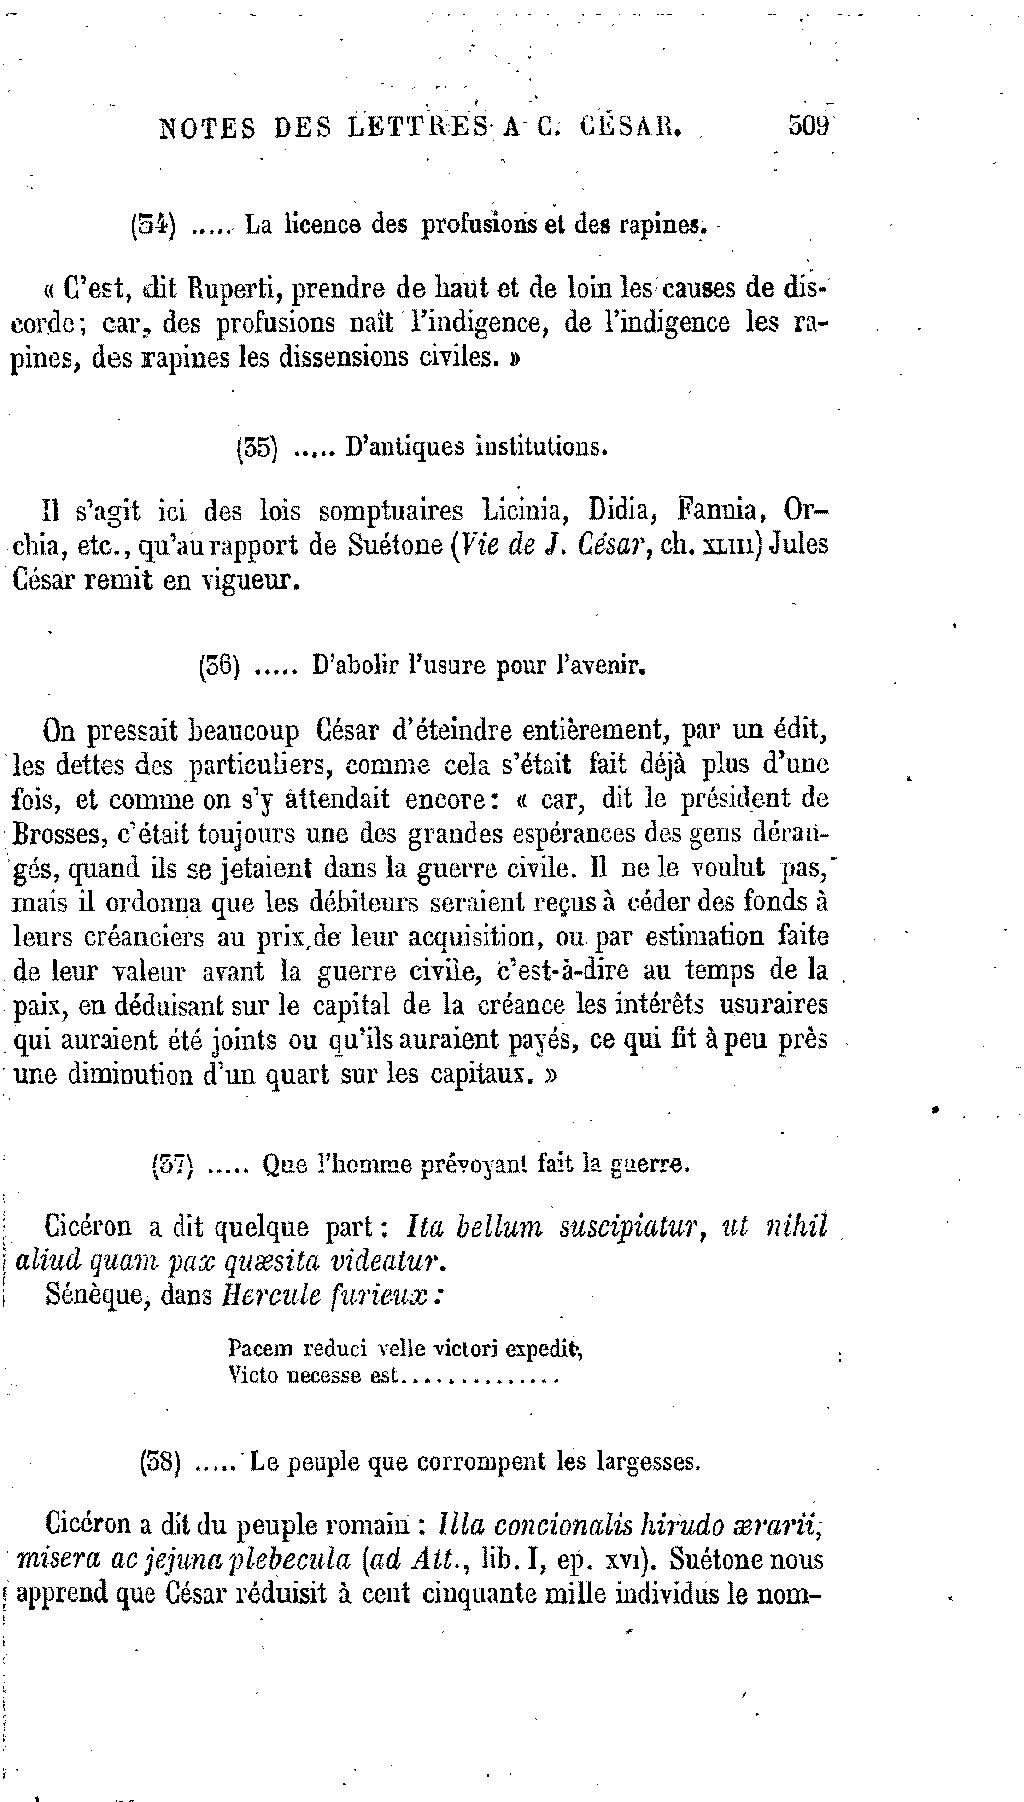 Page œuvres Completes De Salluste Trad Durozoir 1865 Djvu 363 Wikisource